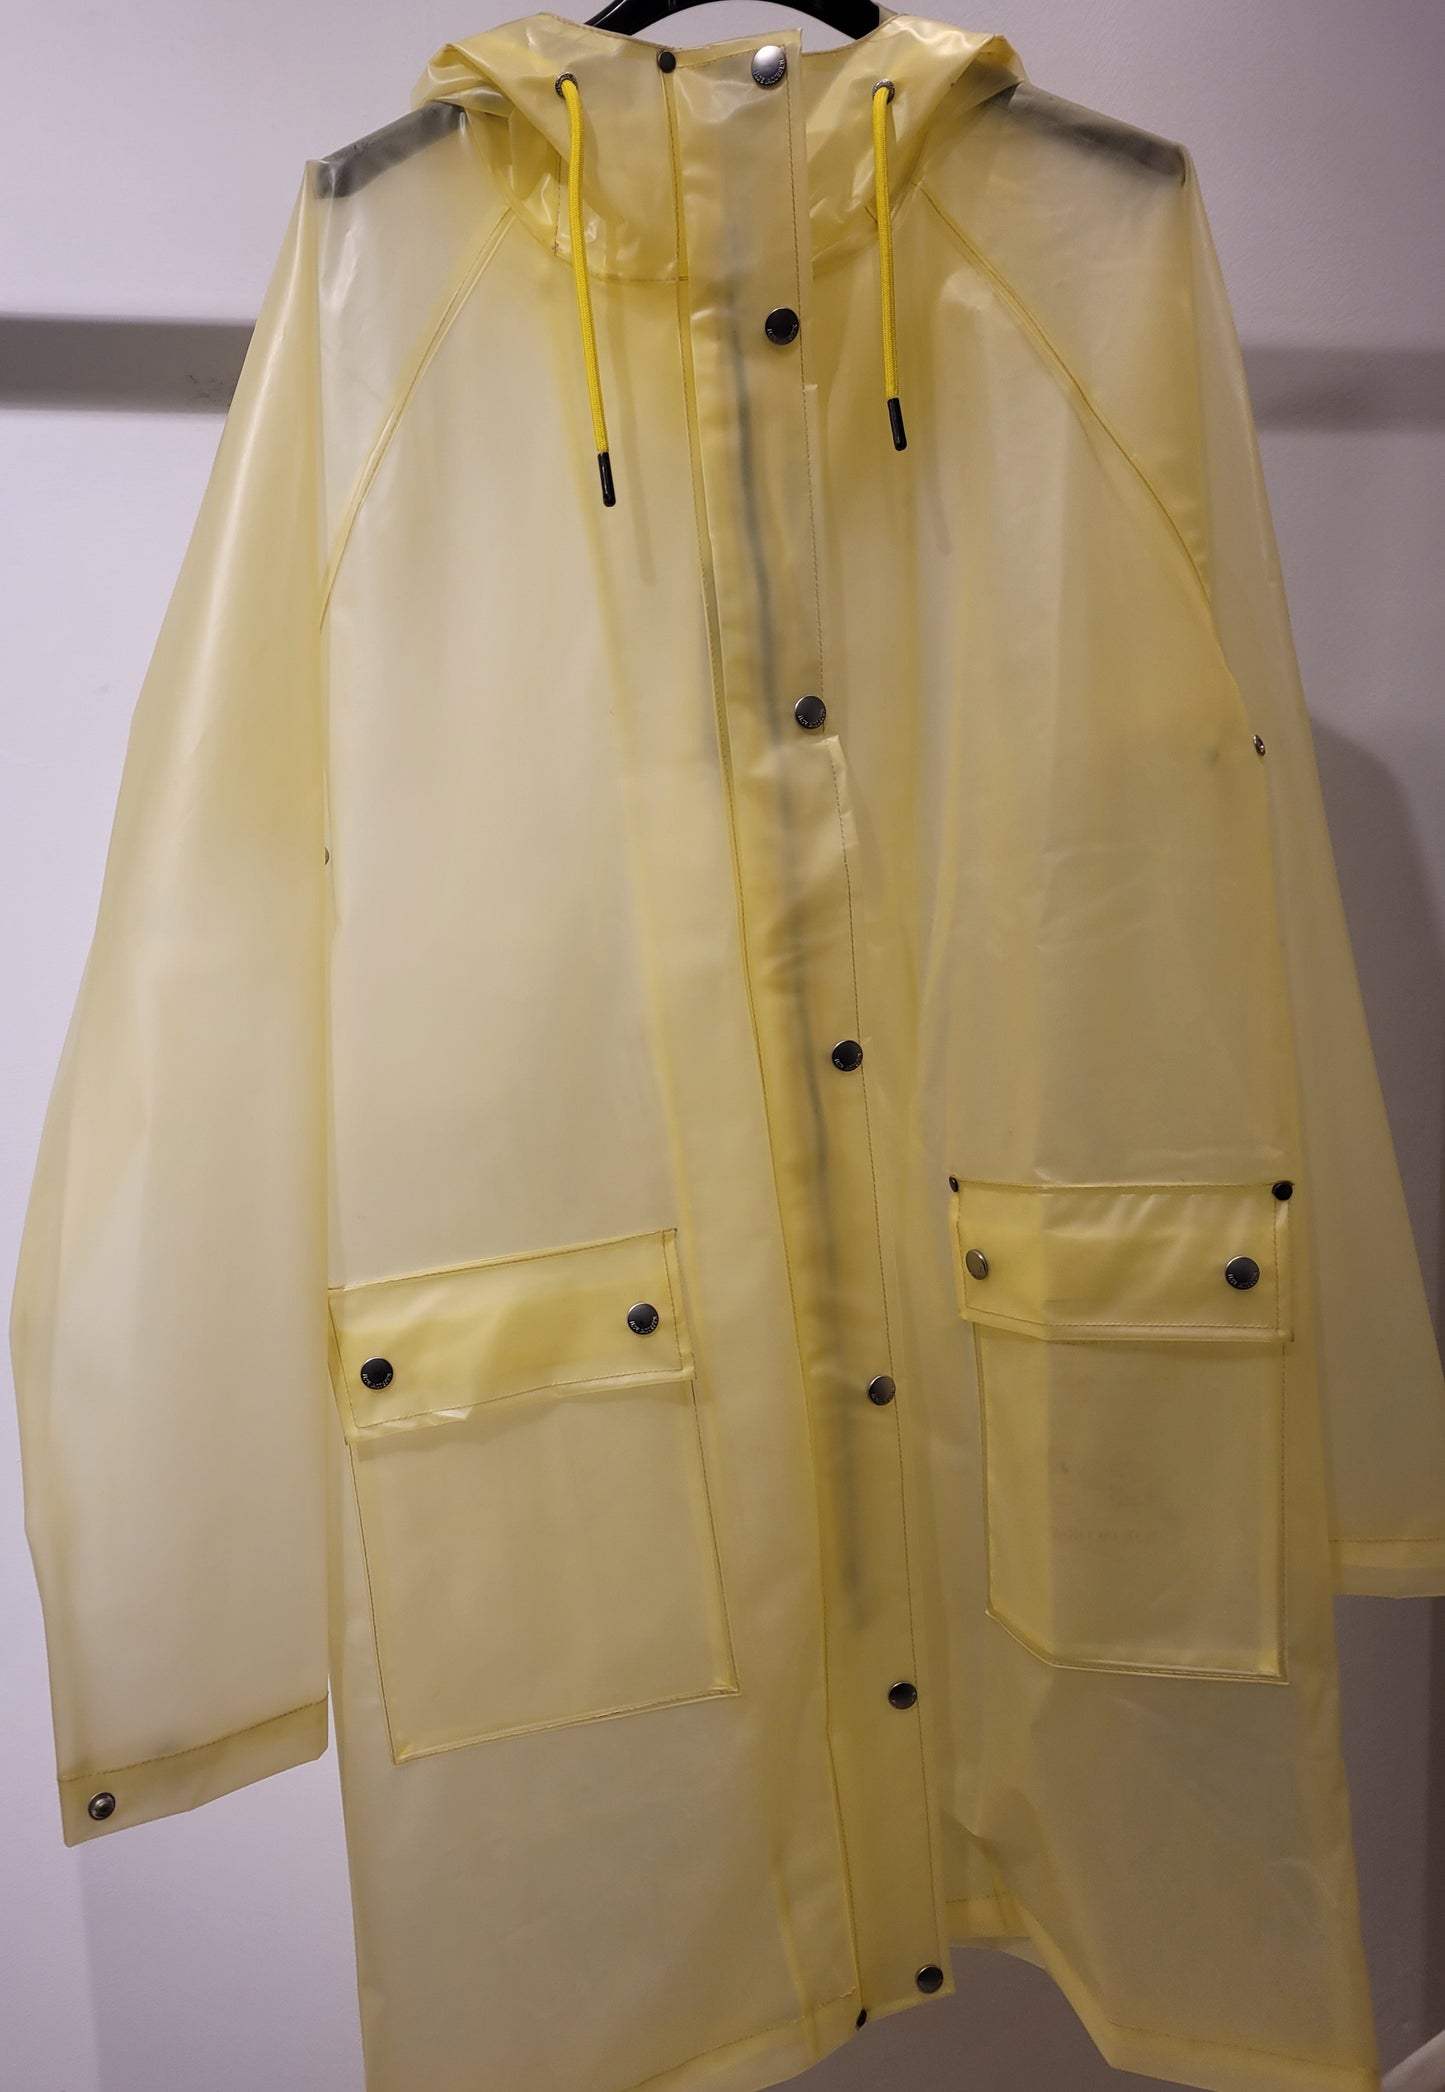 Ilse Jacobsen transparent raincoat